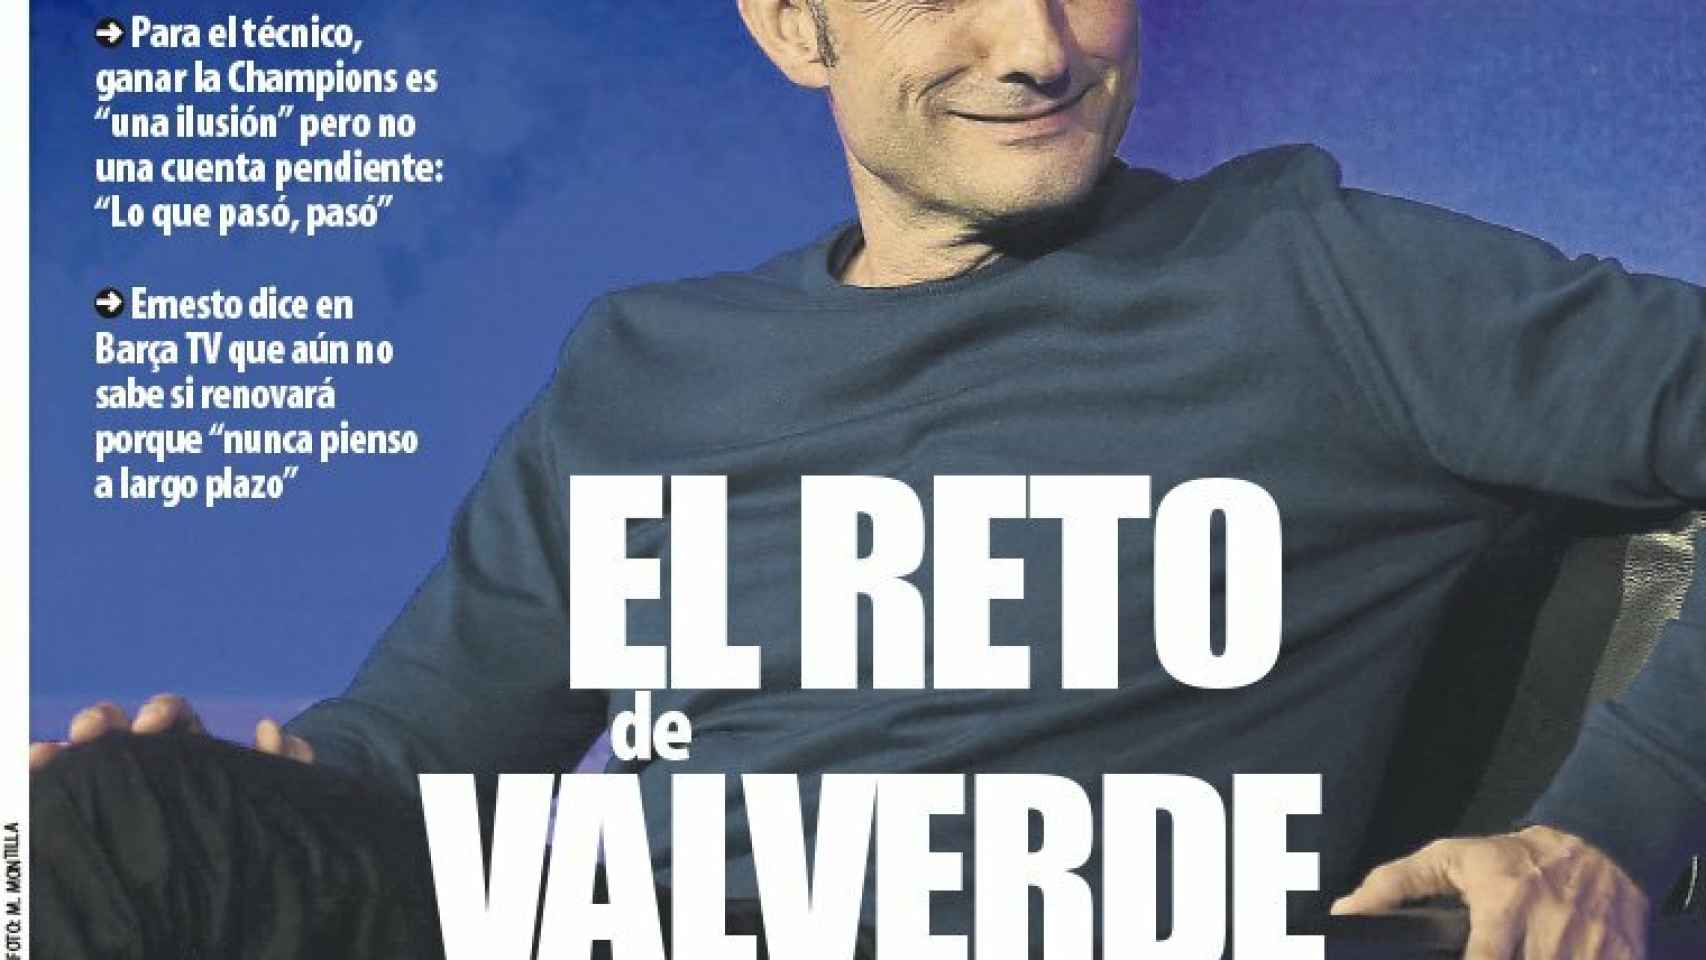 La portada del diario Mundo Deportivo (02/01/2019)